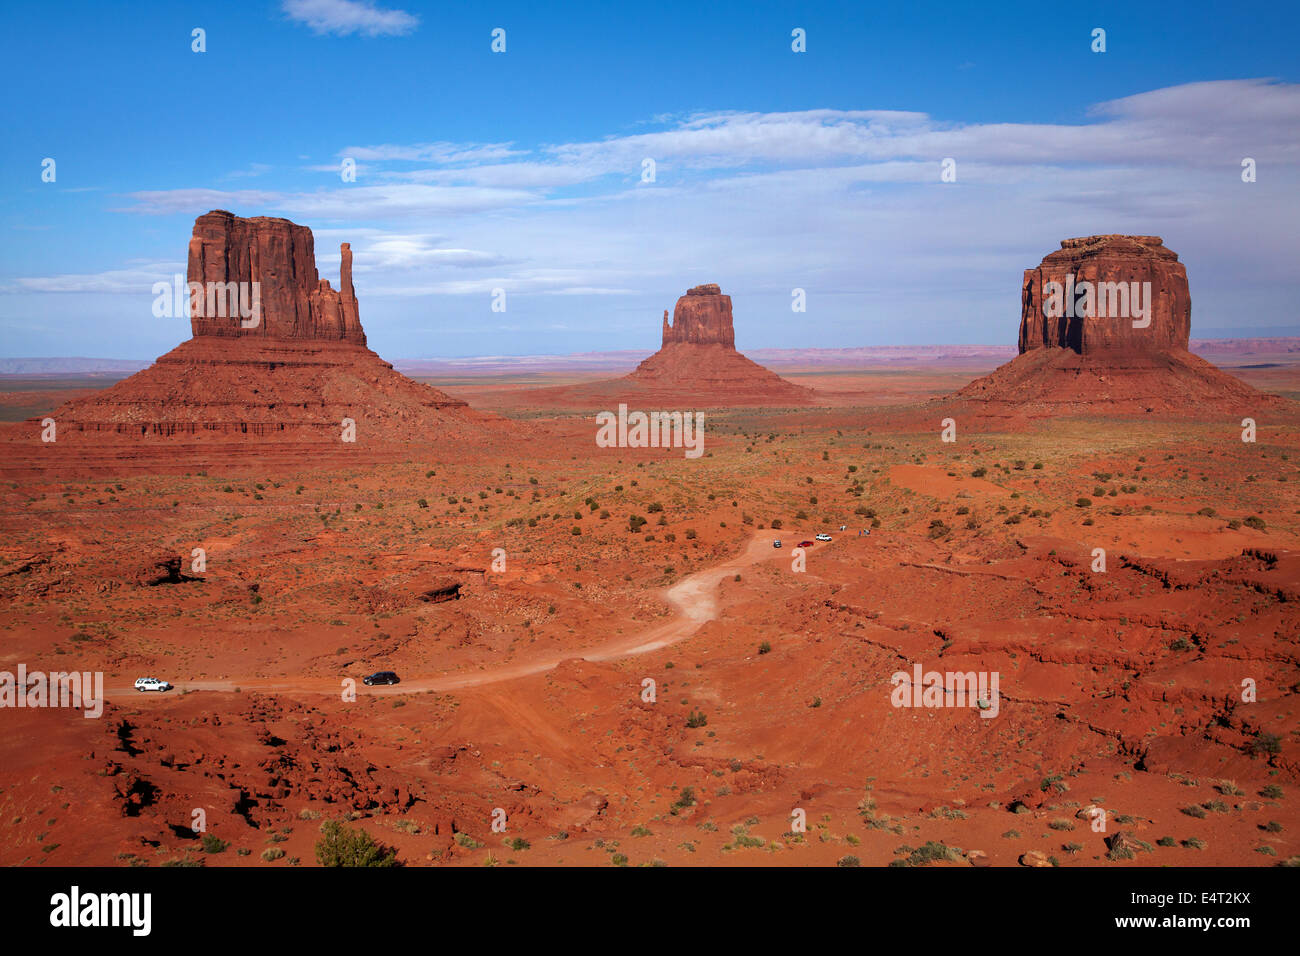 Westen Mitten, Osten Handschuh, Merrick Butte und Valley Scenic Drive, Monument Valley Navajo-Nation, Utah und Arizona Grenze, USA Stockfoto